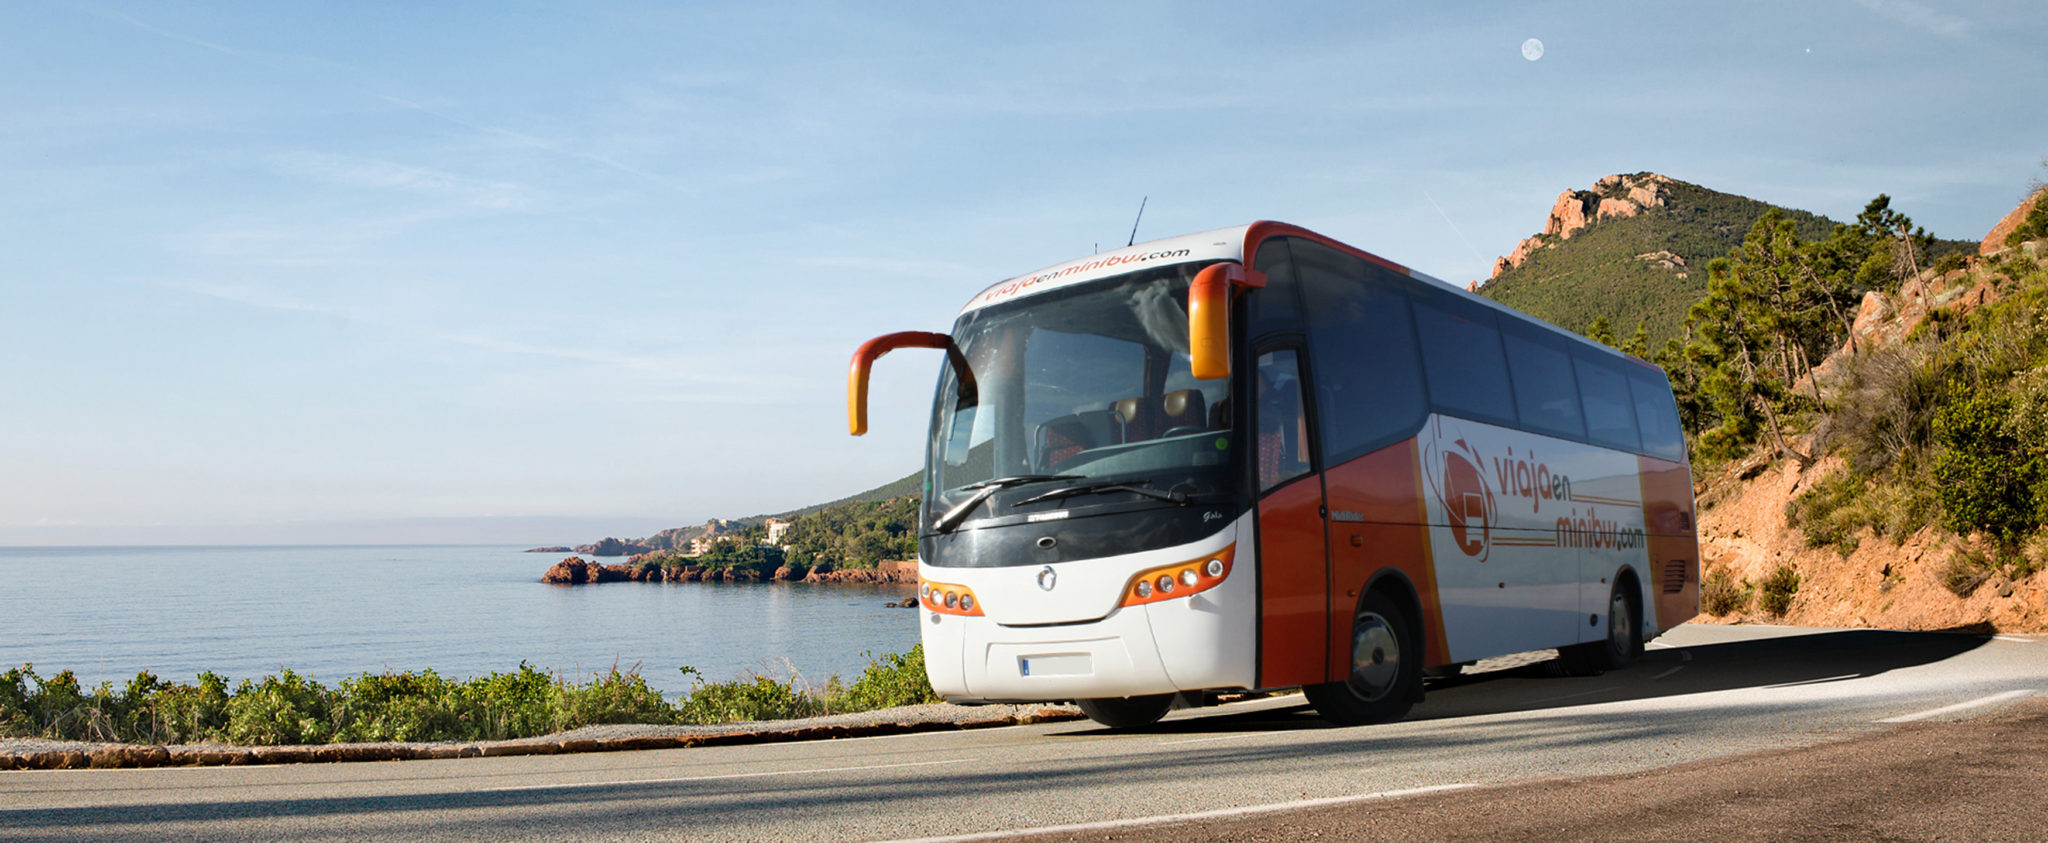 Alquiler autobuses Antequera